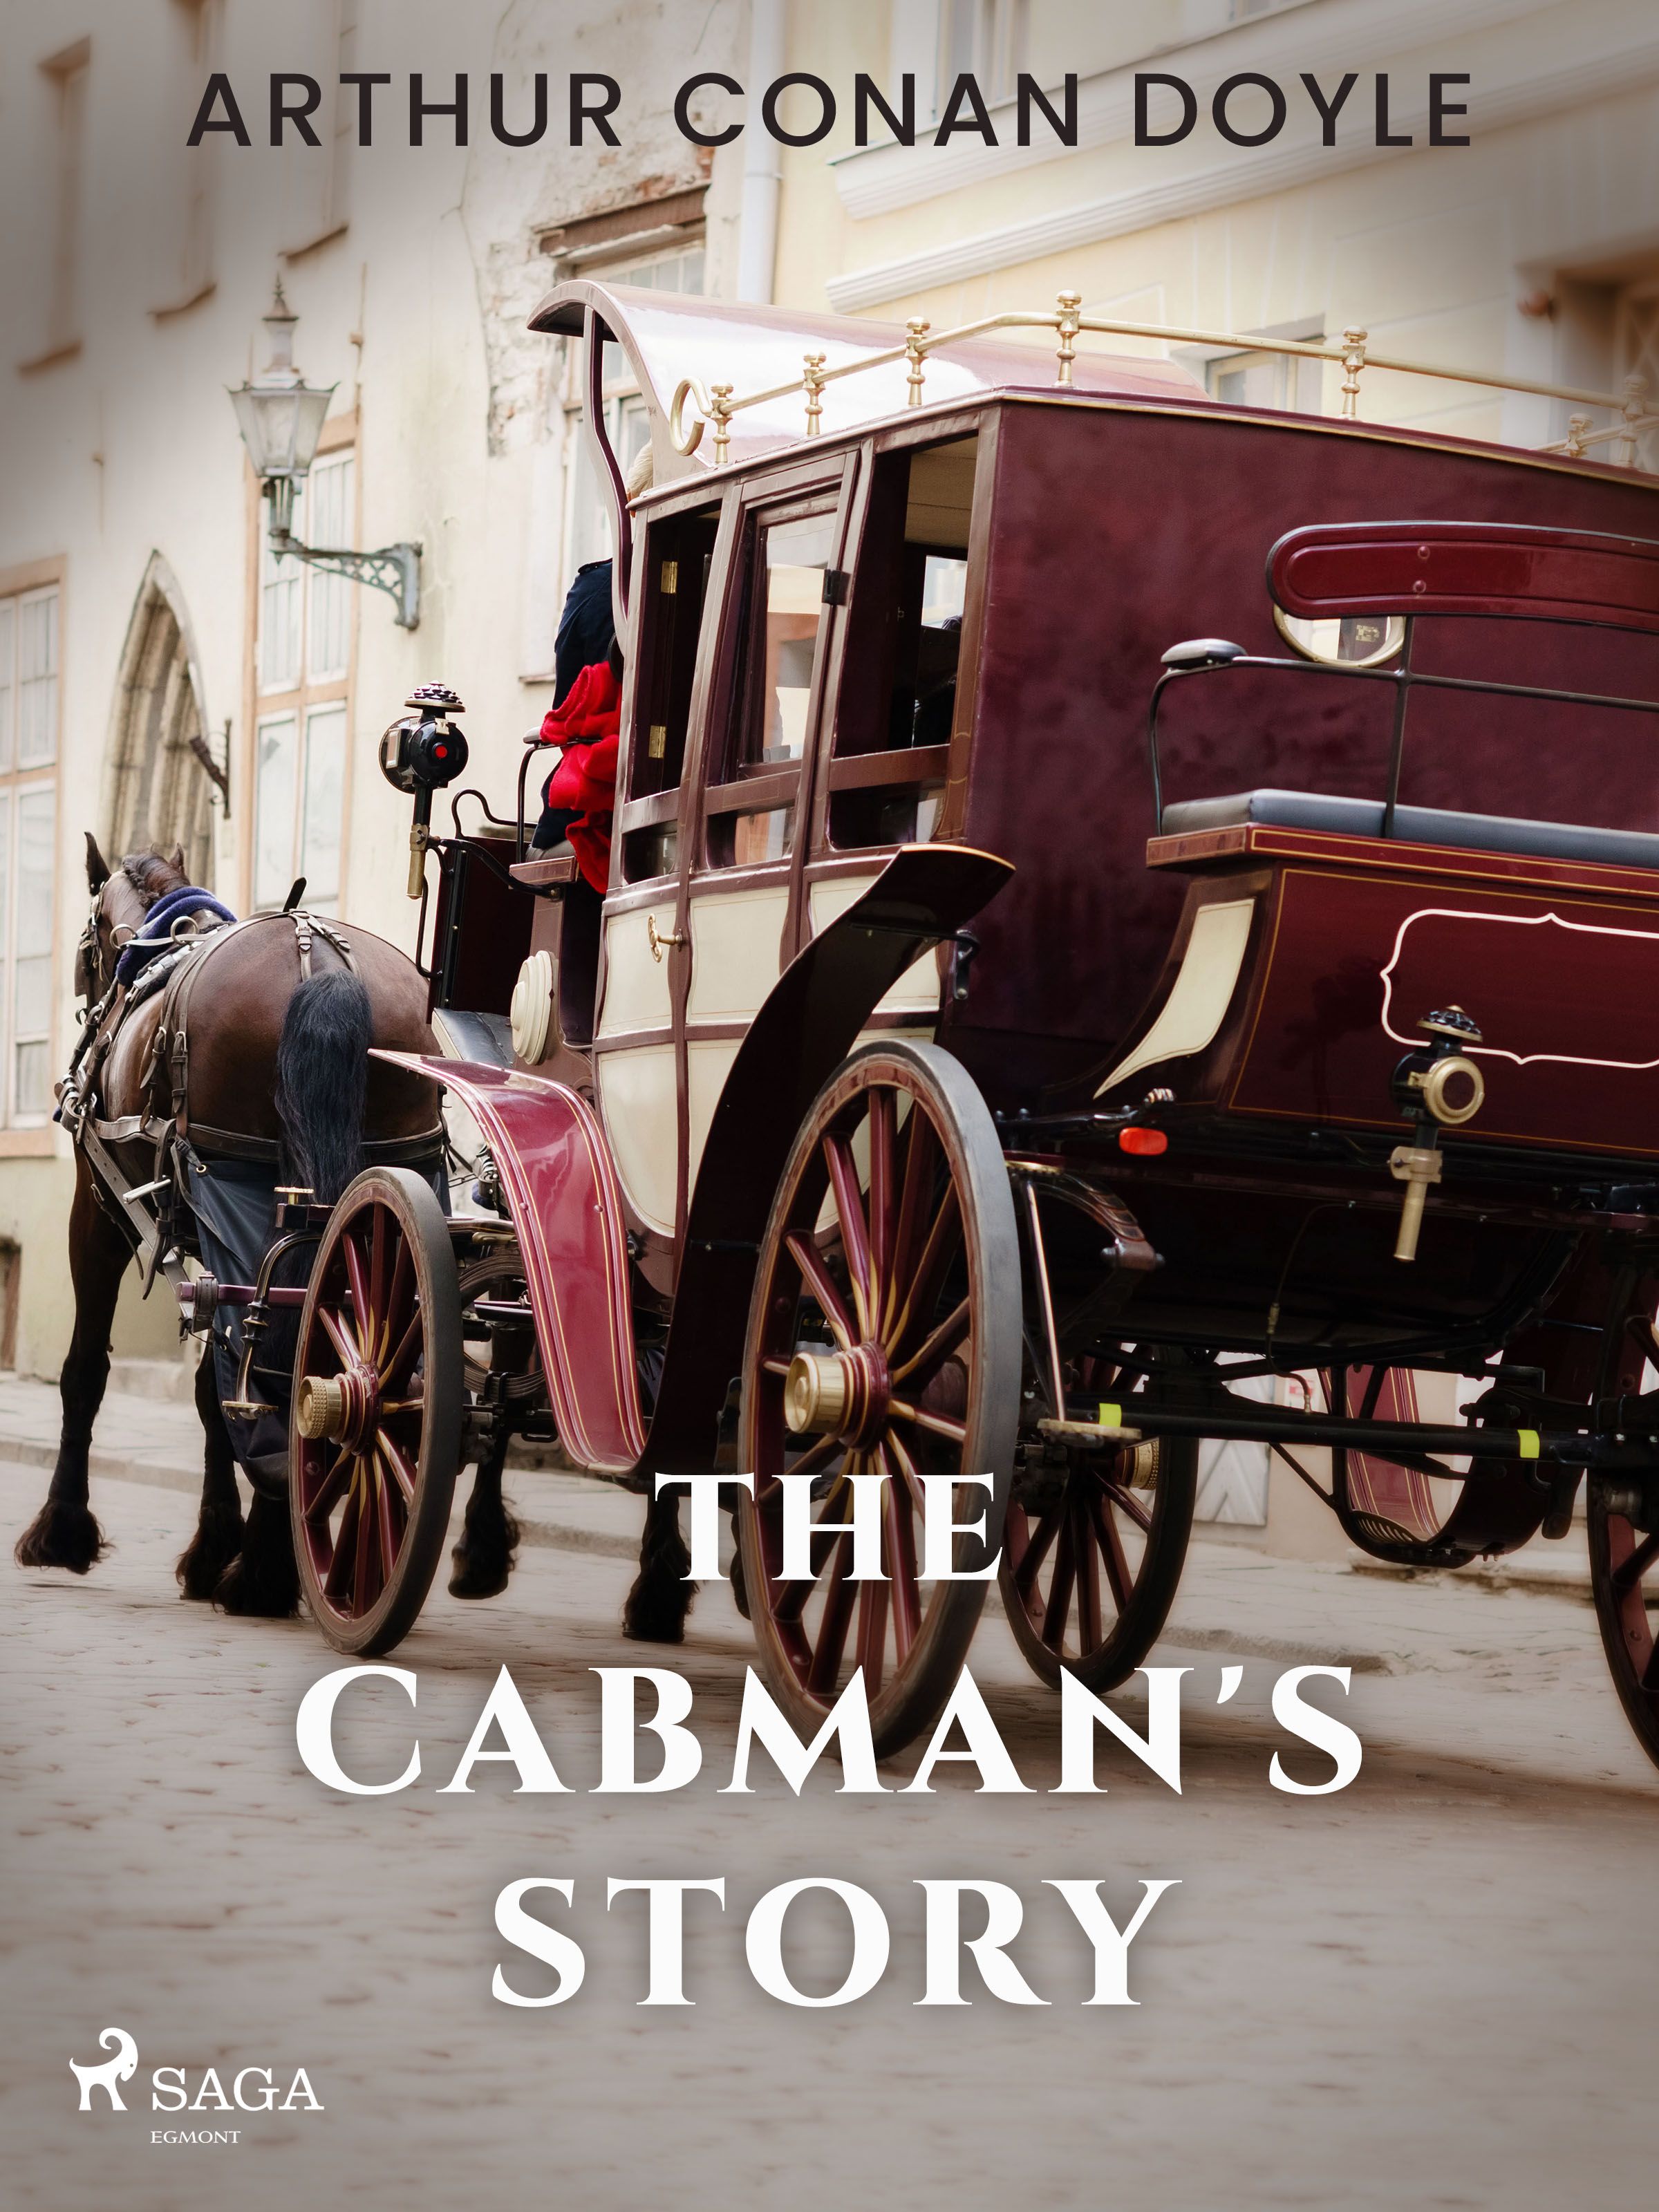 The Cabman's Story, eBook by Arthur Conan Doyle